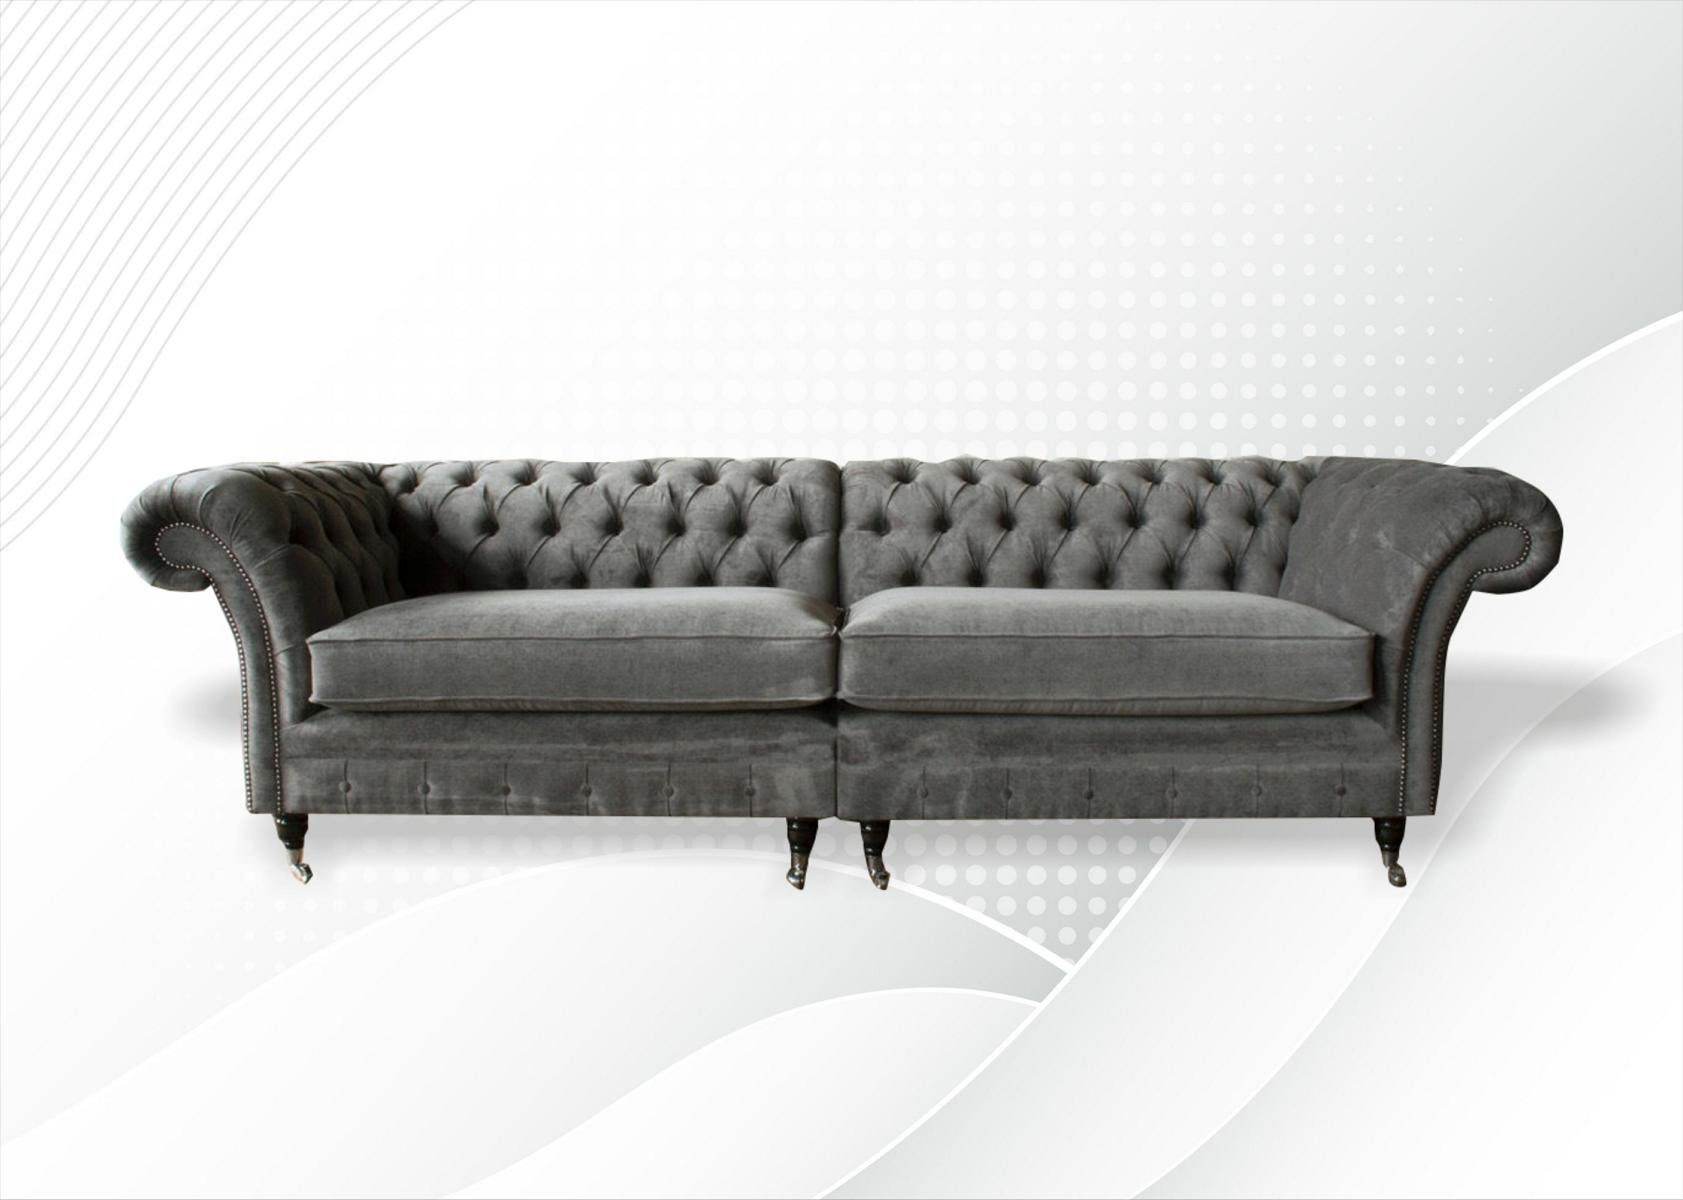 [100% Qualitätsgarantie] JVmoebel Sofa xxl Sofa Made Europe Chesterfield Sitzer Polster Sitz Garnitur in Graue, 4 Couch